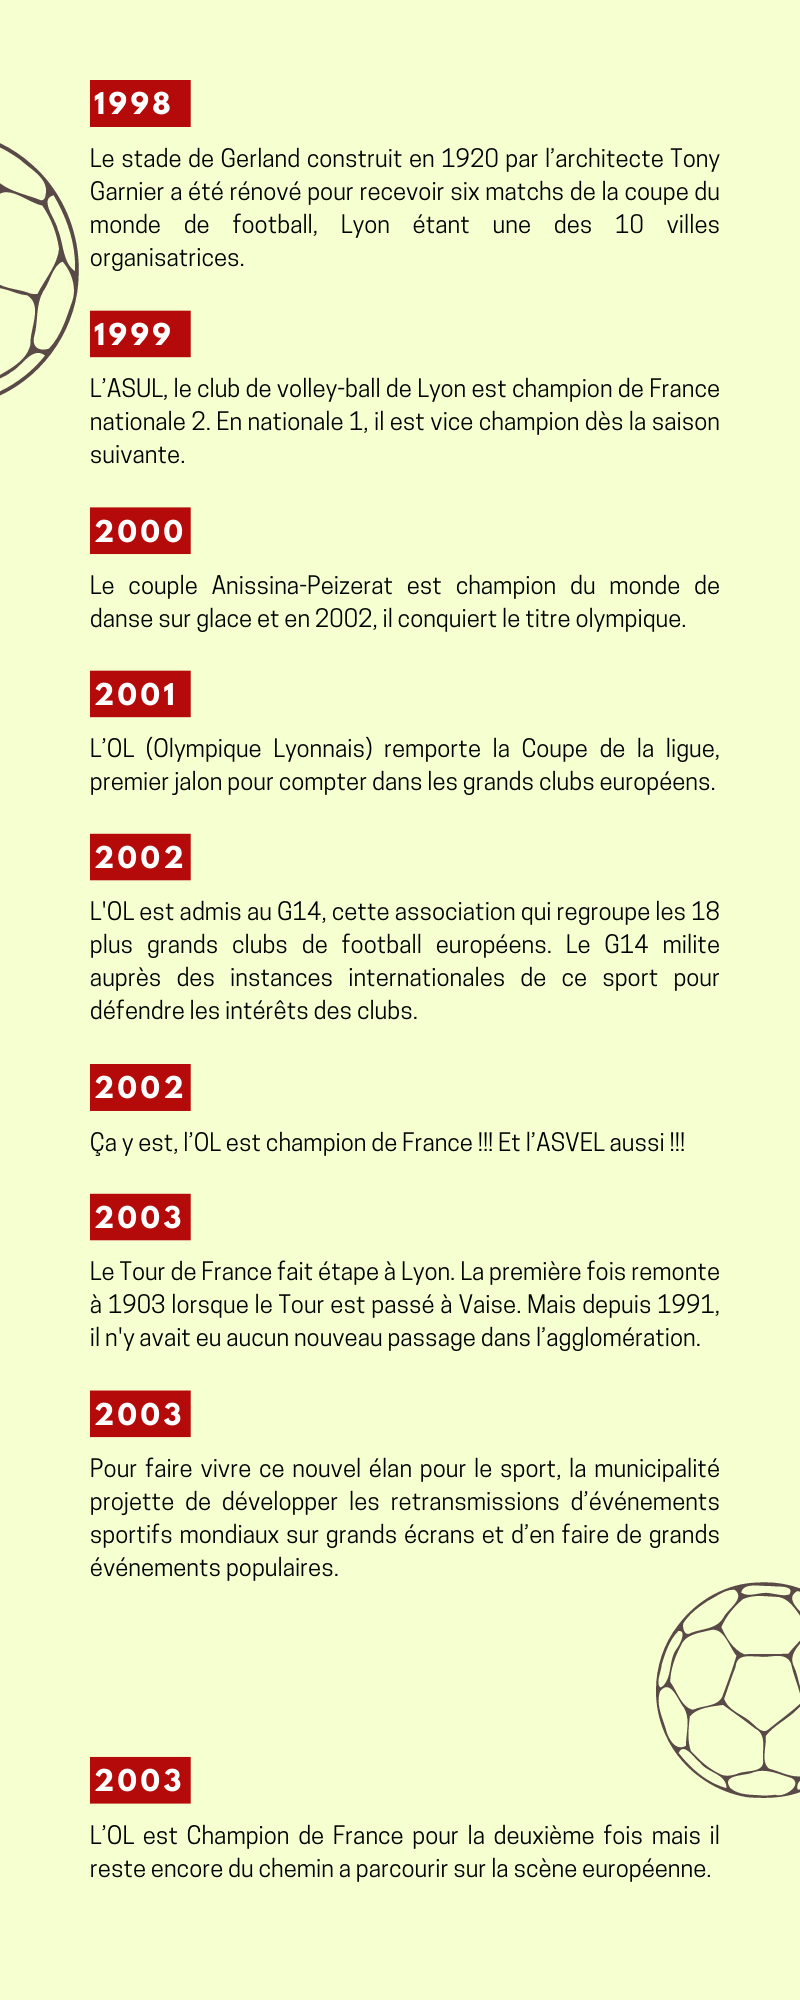 Chronologie sur le thème du sport de 1998 à 2003